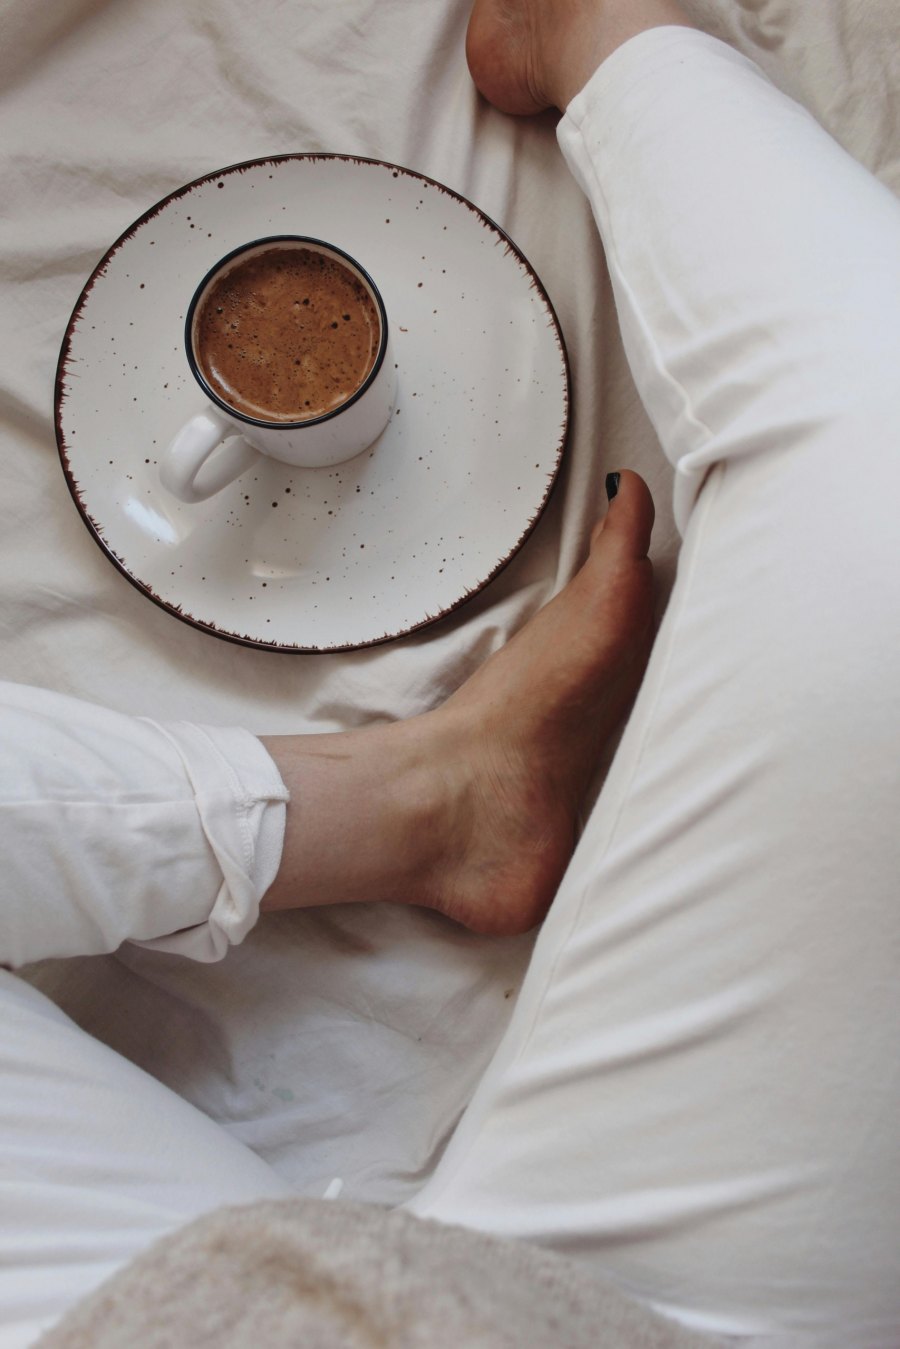 Αυτό το νόστιμο ζεστό ρόφημα πριν τον ύπνο μπορεί να ενισχύσει την ερωτική σου ζωή